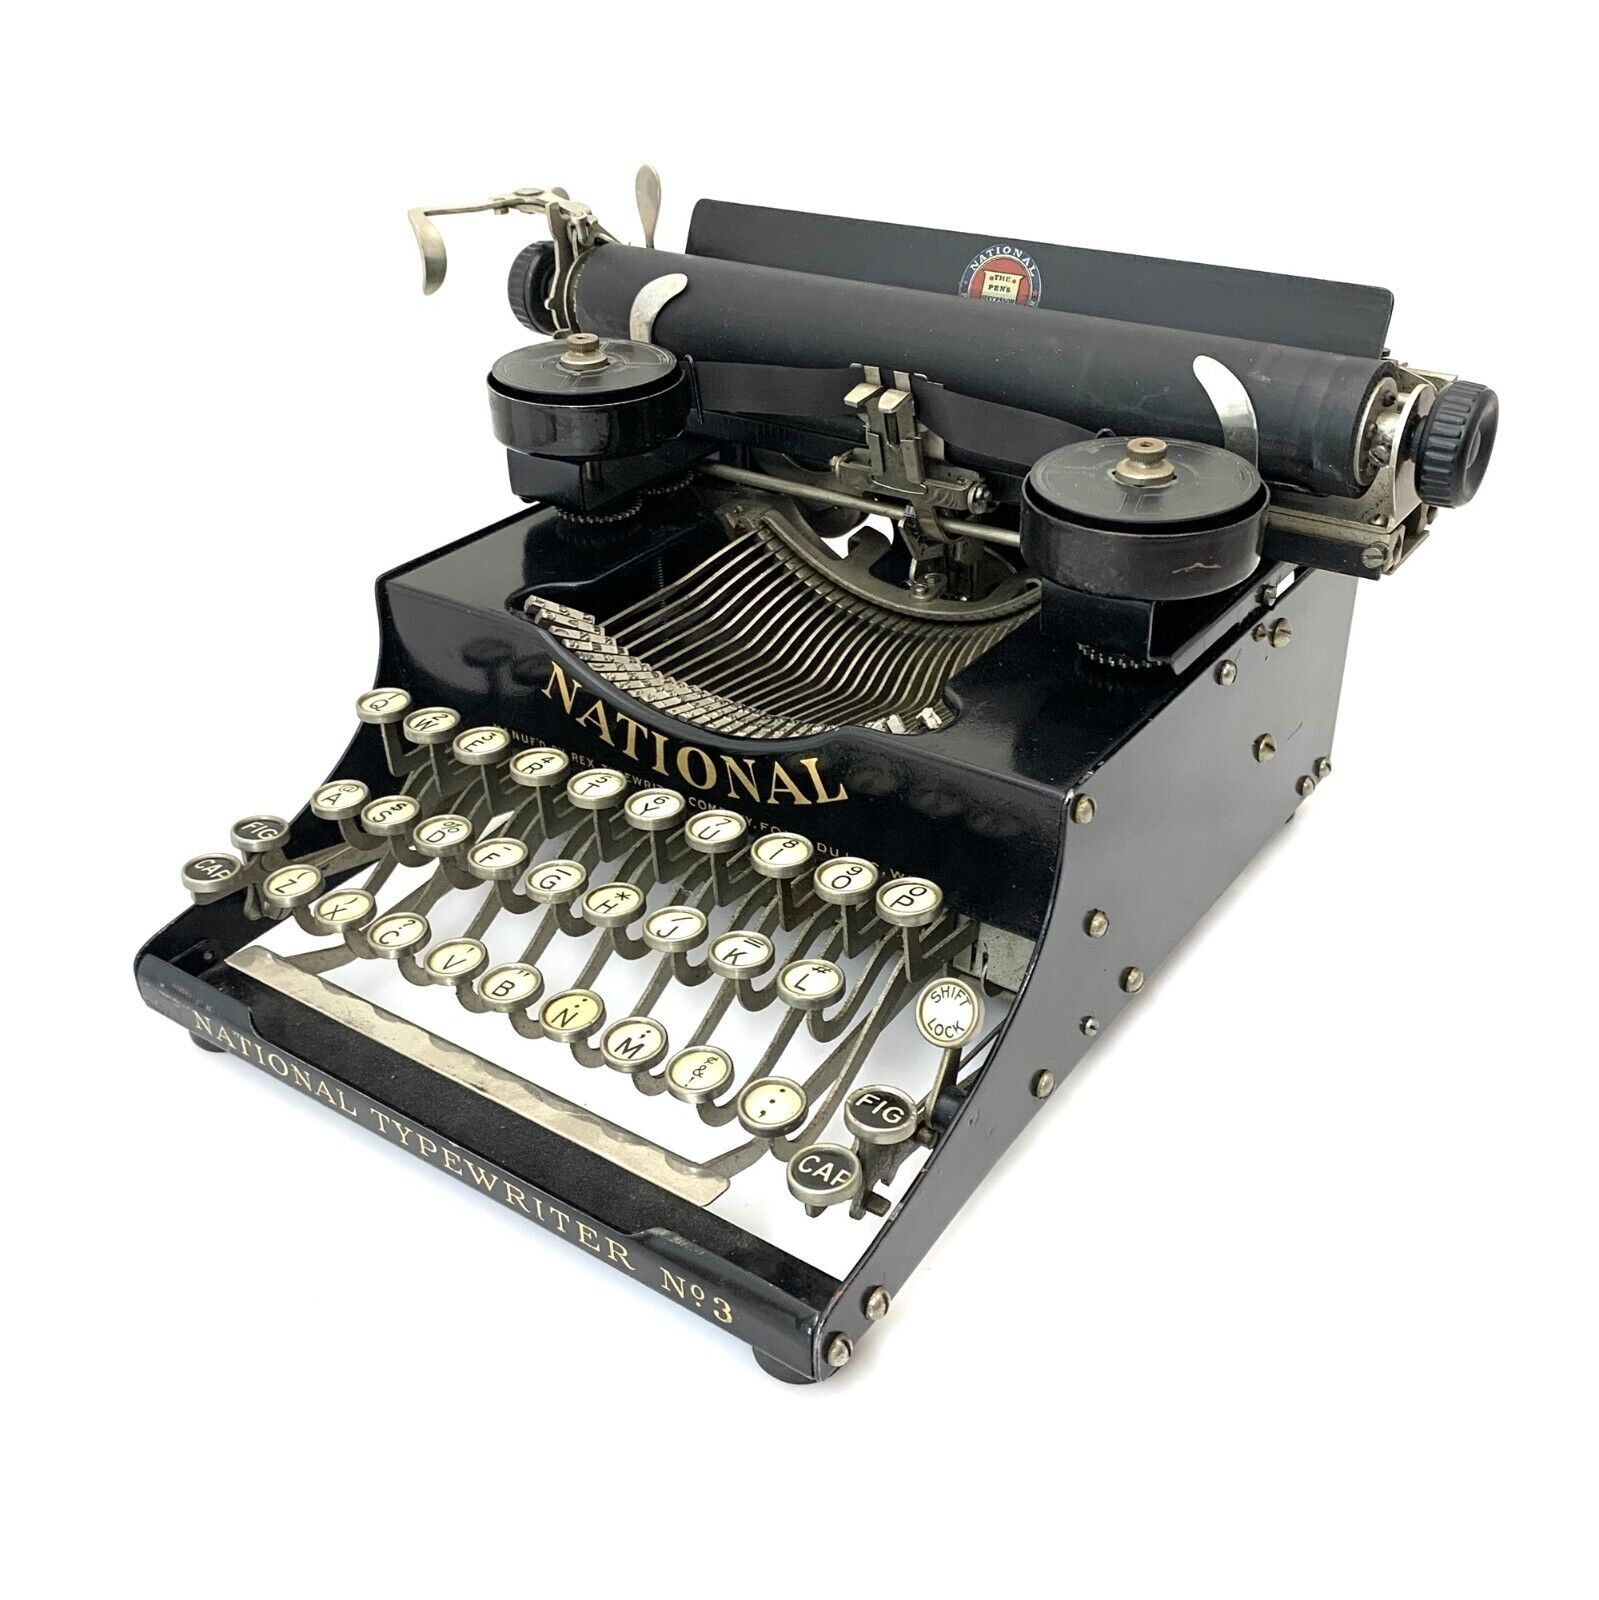 MUSEUM 1918 National Portable No.2 Typewriter w/Case Antique Schreibmaschine Vtg